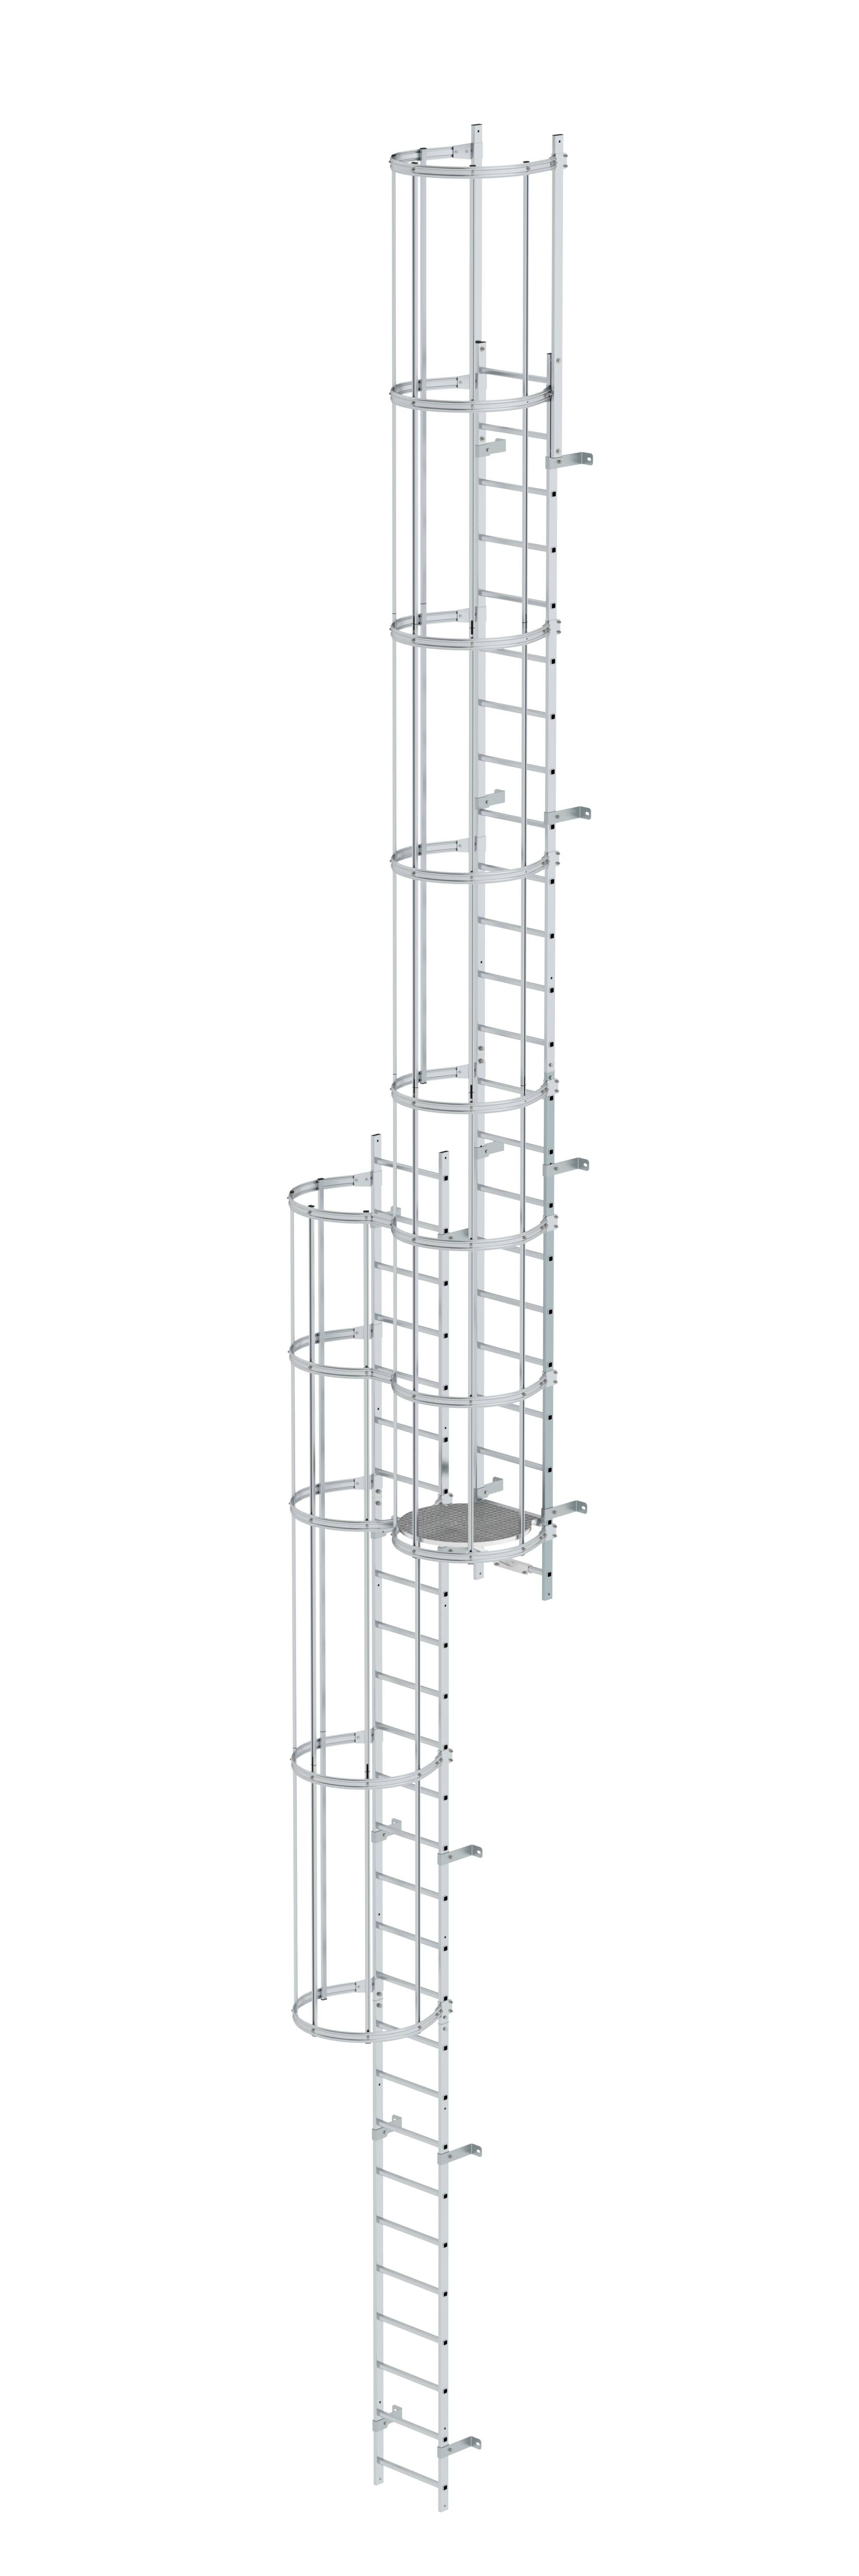 Mehrzügige Steigleiter mit Rückenschutz (Notleiter) Aluminium blank 12,96m